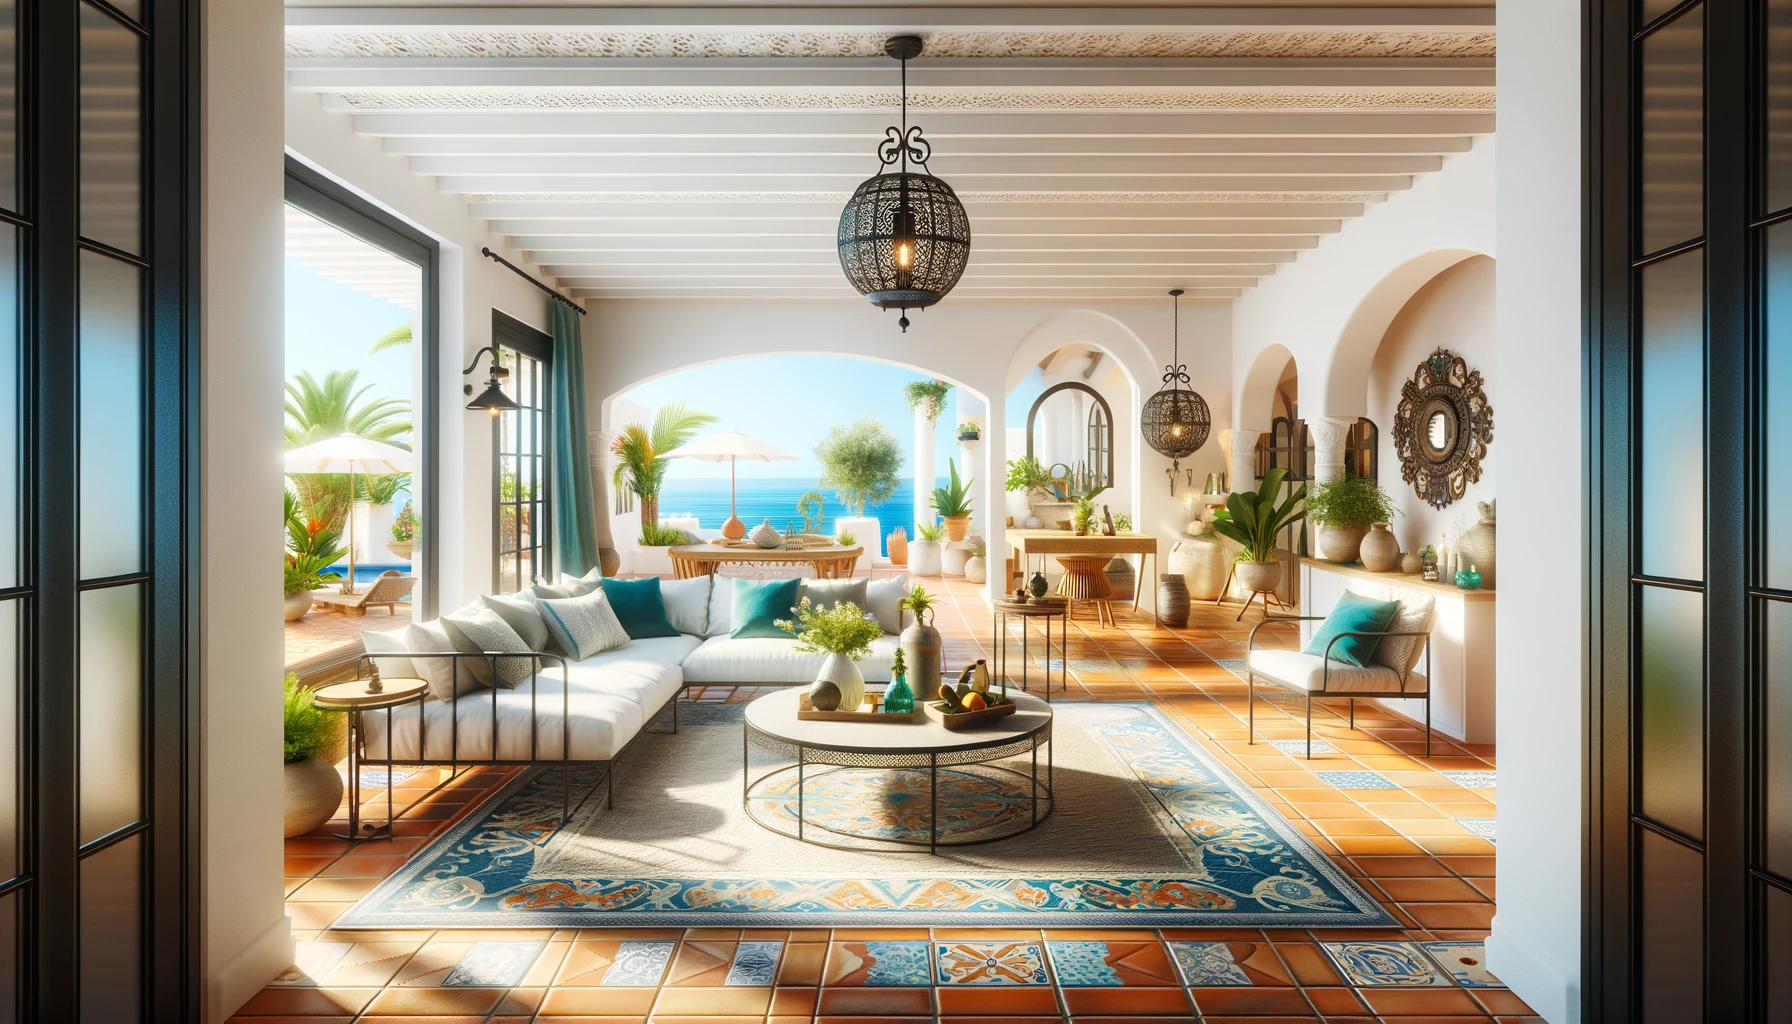 地中海リゾートスタイルのリビングルームでテラコッタの床タイル、鉄製の家具、青や緑のアクセントカラーが特徴的